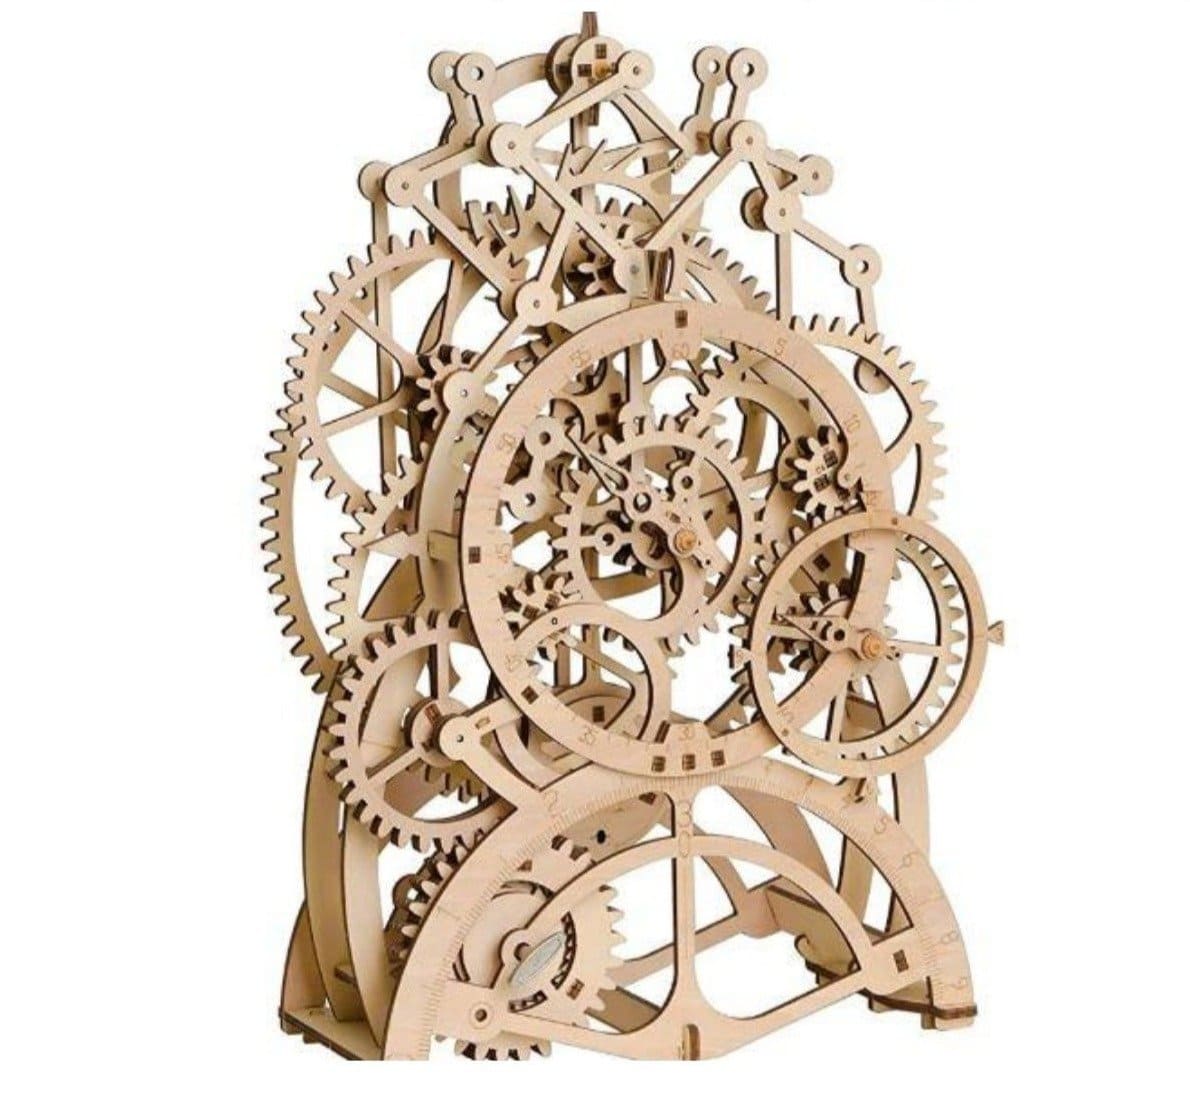 Self-Assembly Mechanical Wooden Gear Pendulum Clock Kit Fuego Cloud